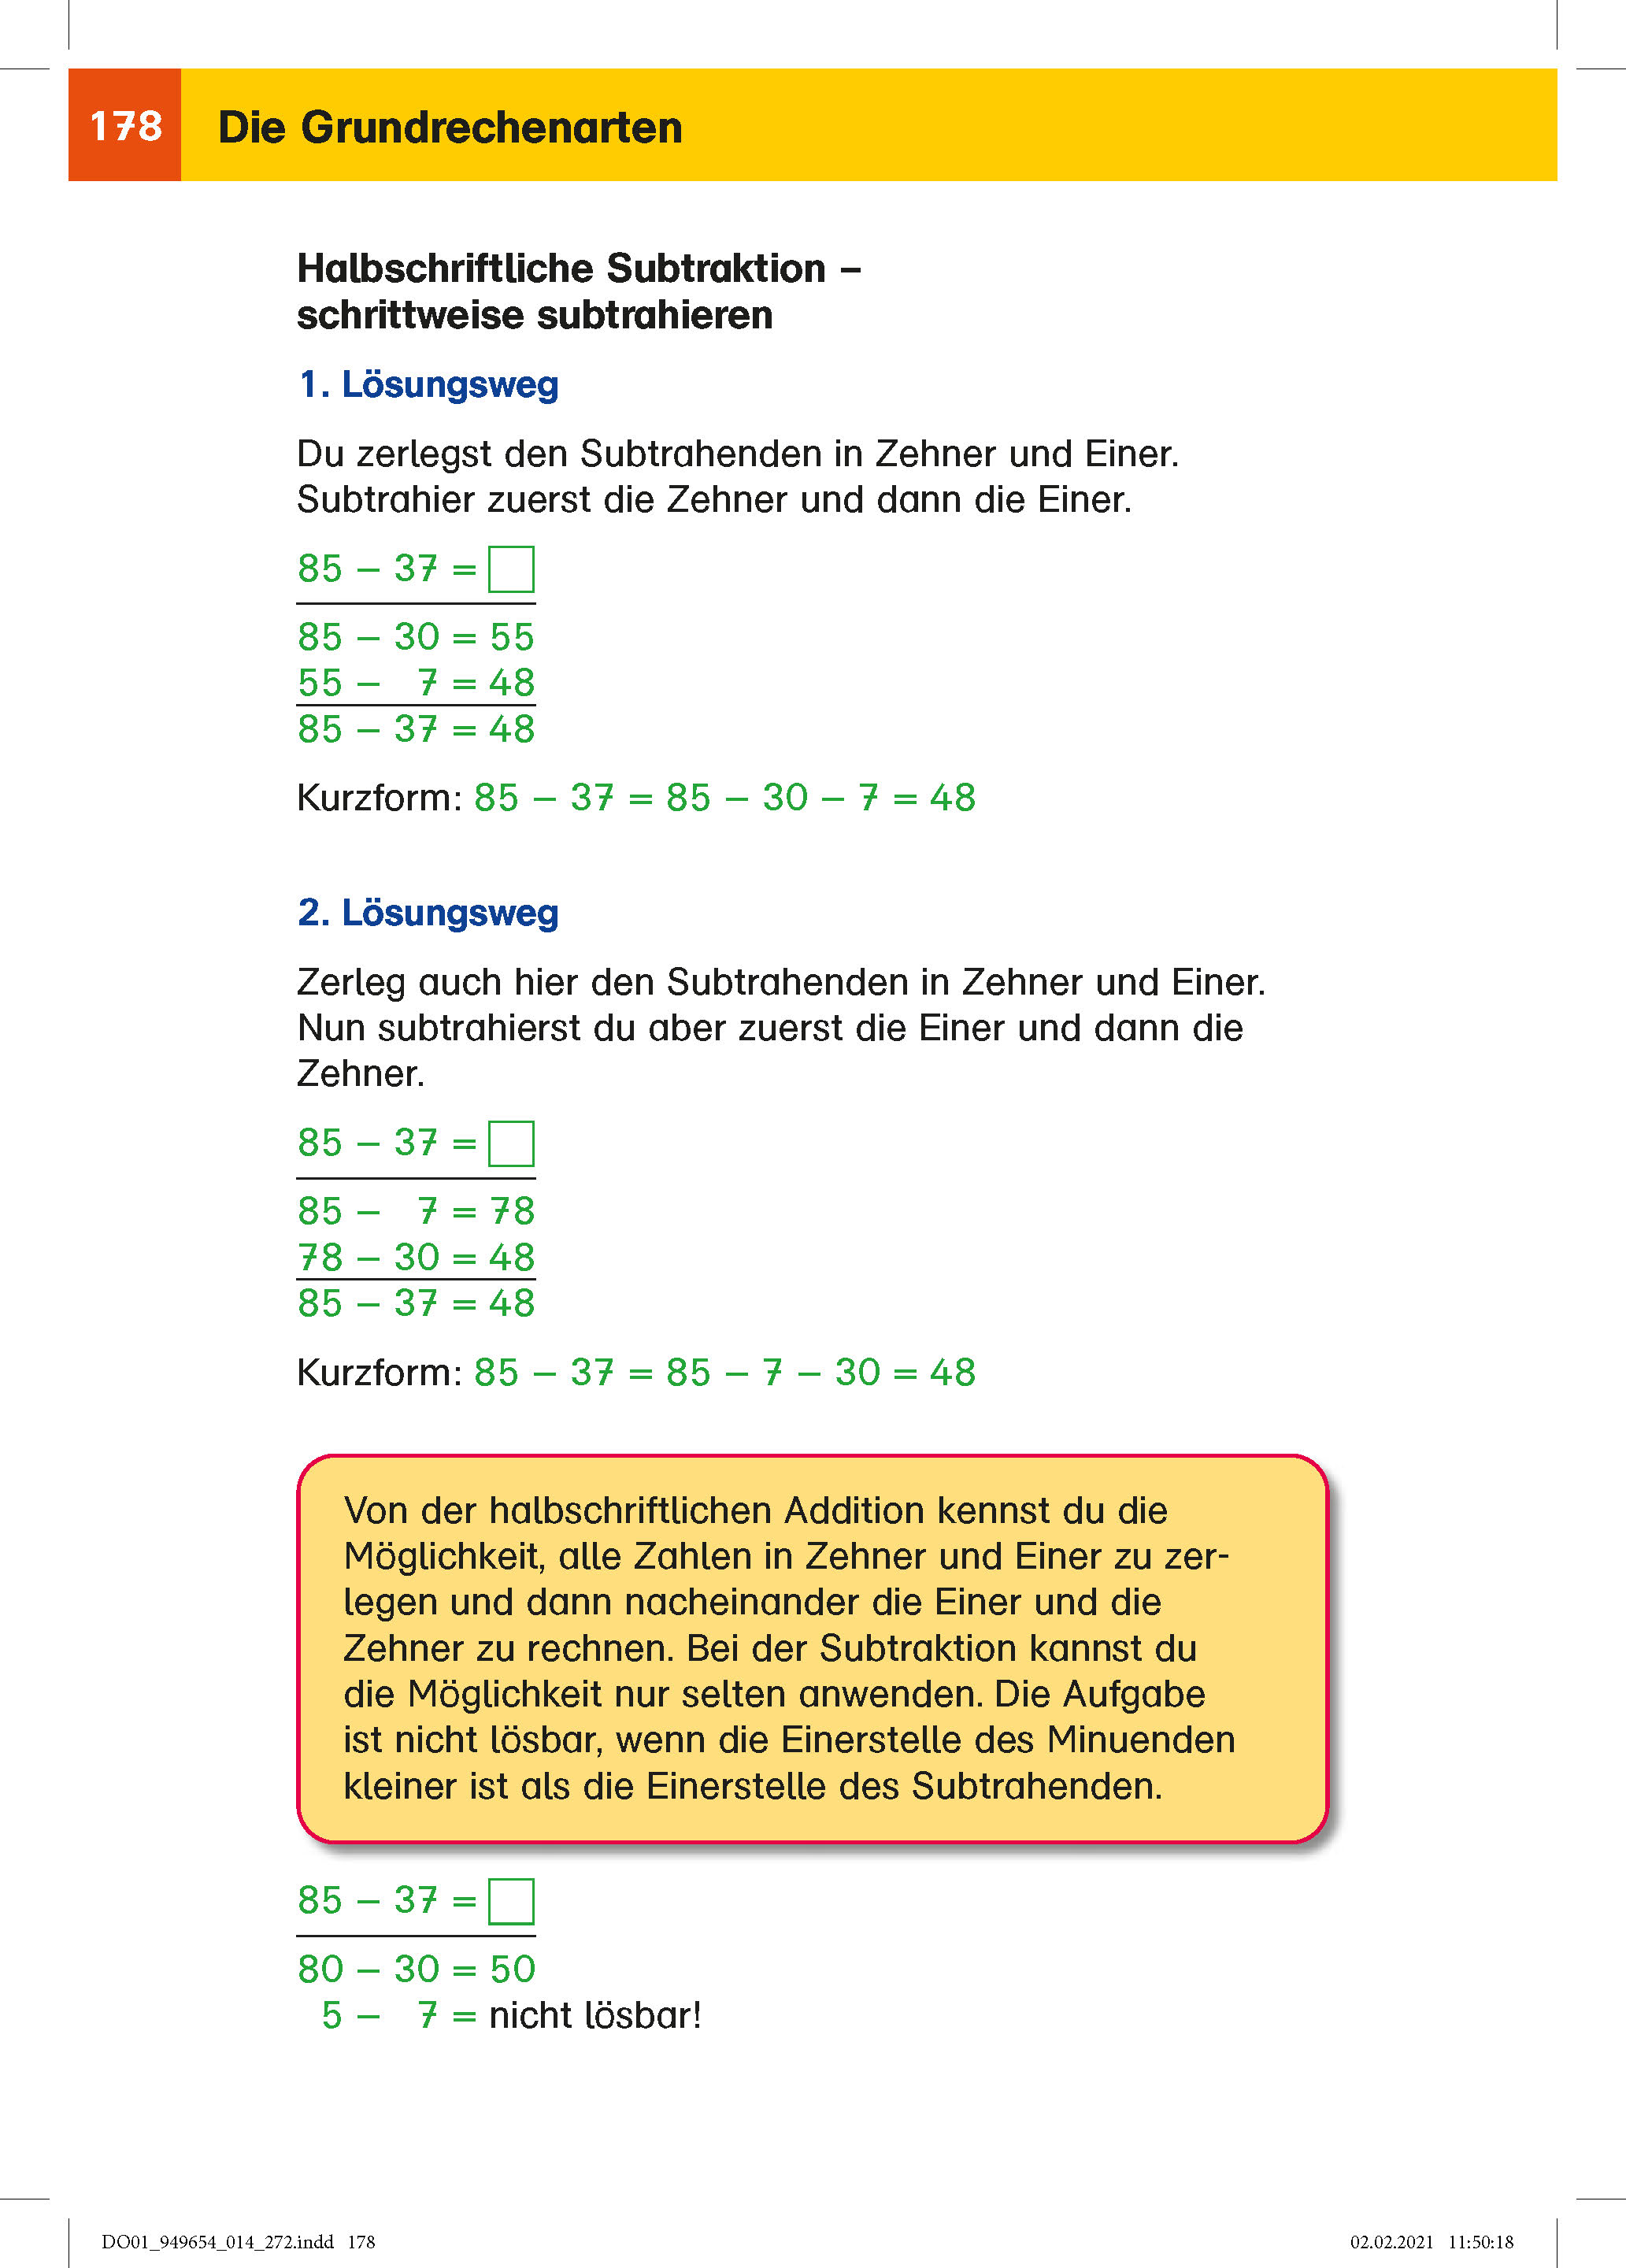 Klett Das Super-Grundschul-Wissensbuch Deutsch und Mathematik 1. - 4. Klasse